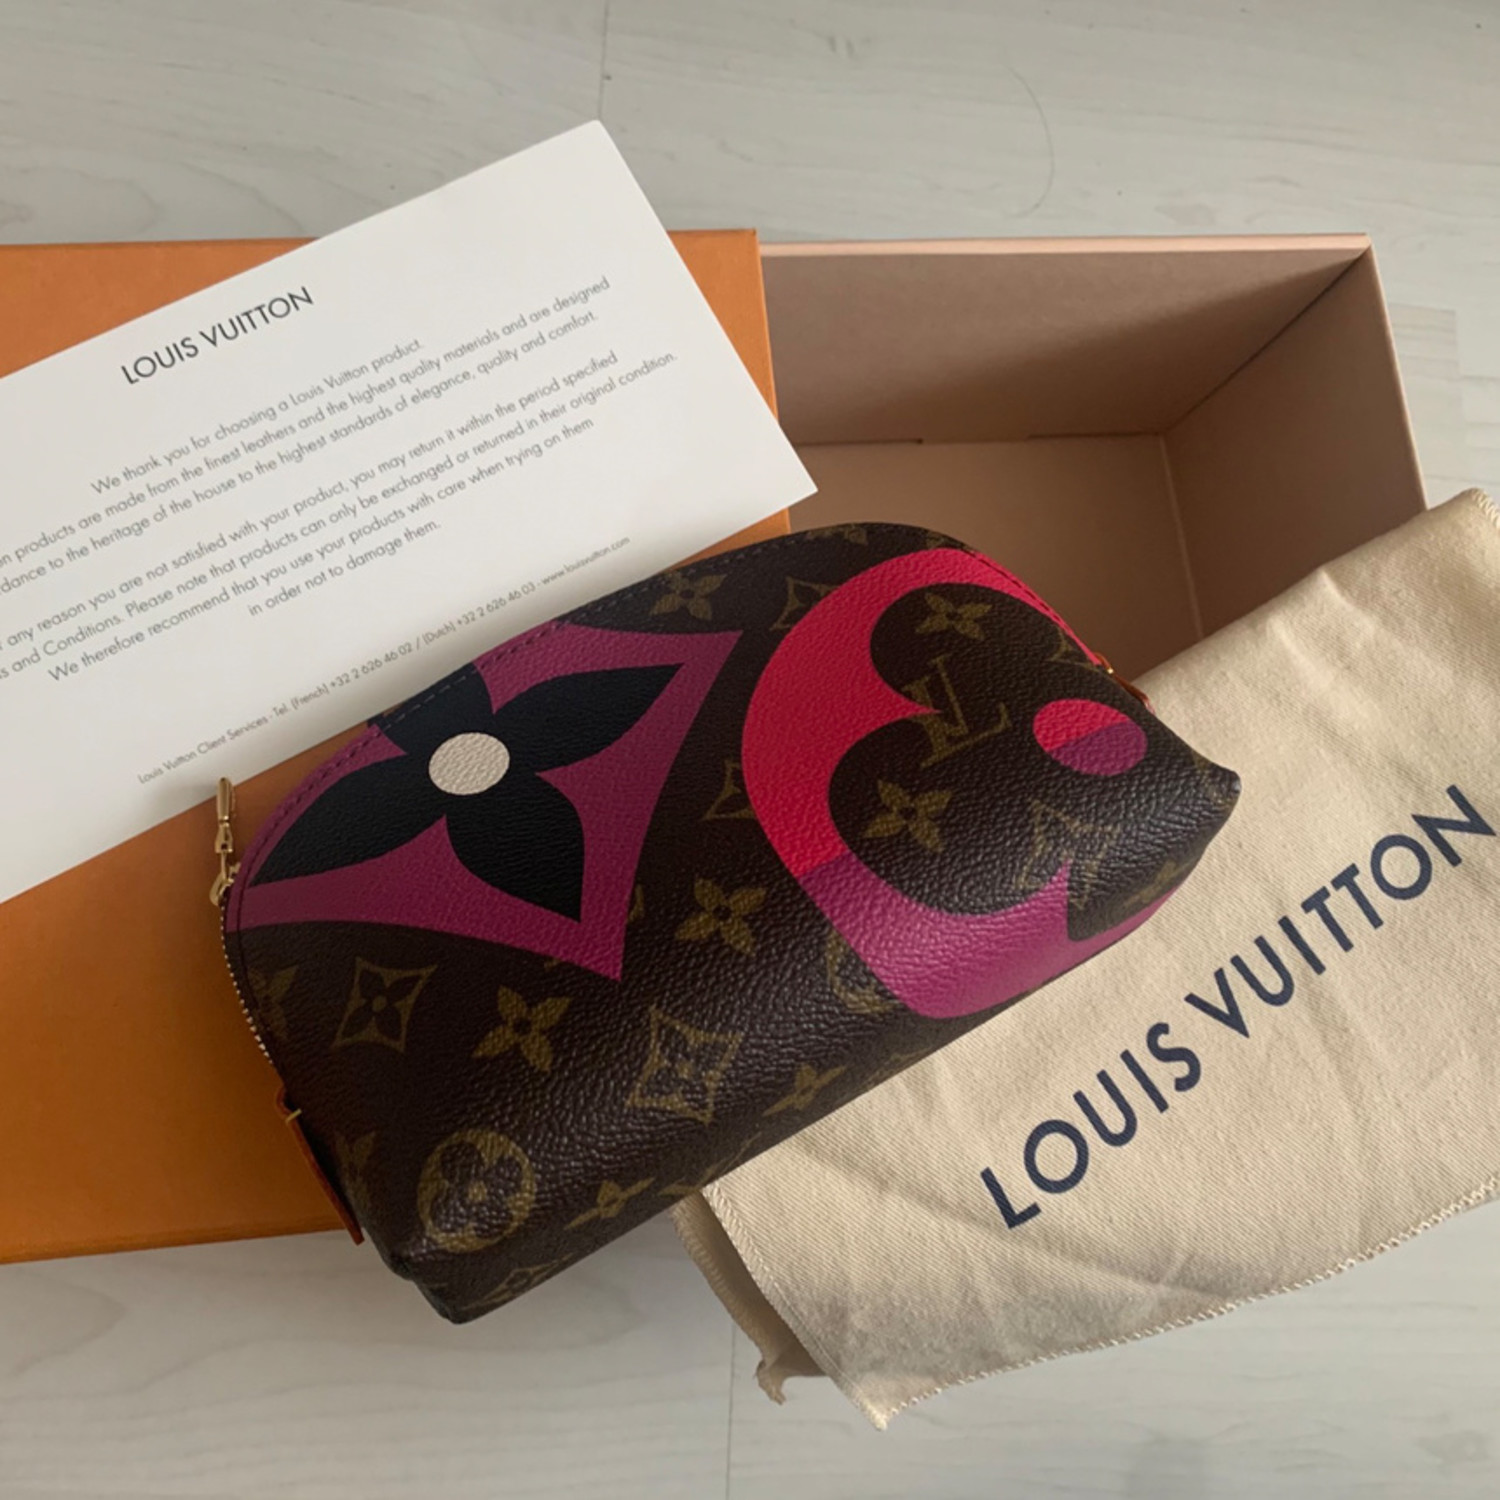 Louis Vuitton Game on Kosmetiktasche - Unboxing, Details, was